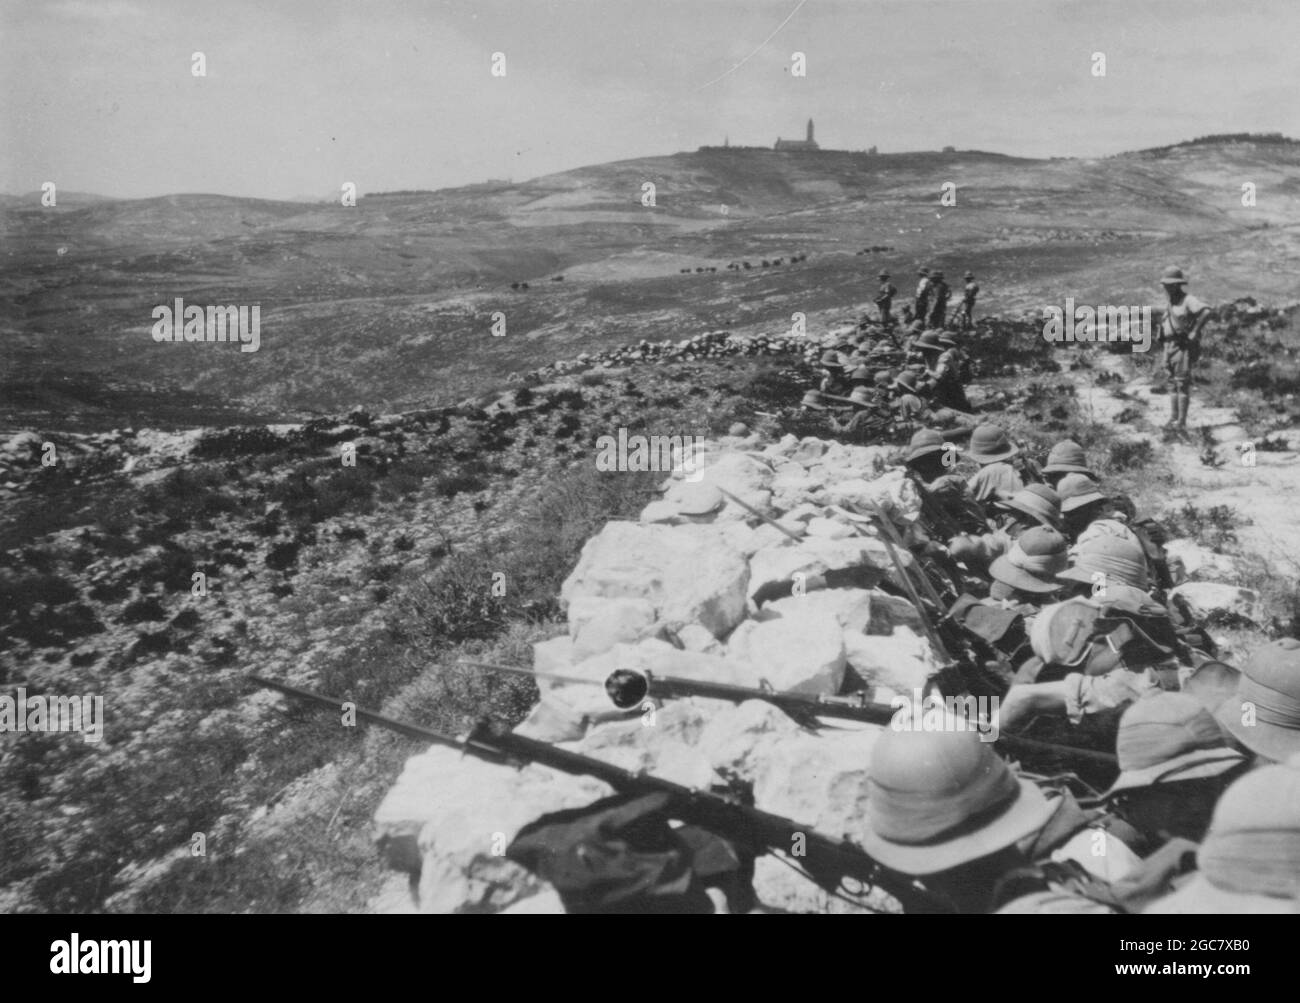 ANATHOTH, PALESTINA - 1920 - soldati dell'esercito britannico in una posizione catturata nei pressi di Anathoth, Palestina - Foto: Geopix Foto Stock